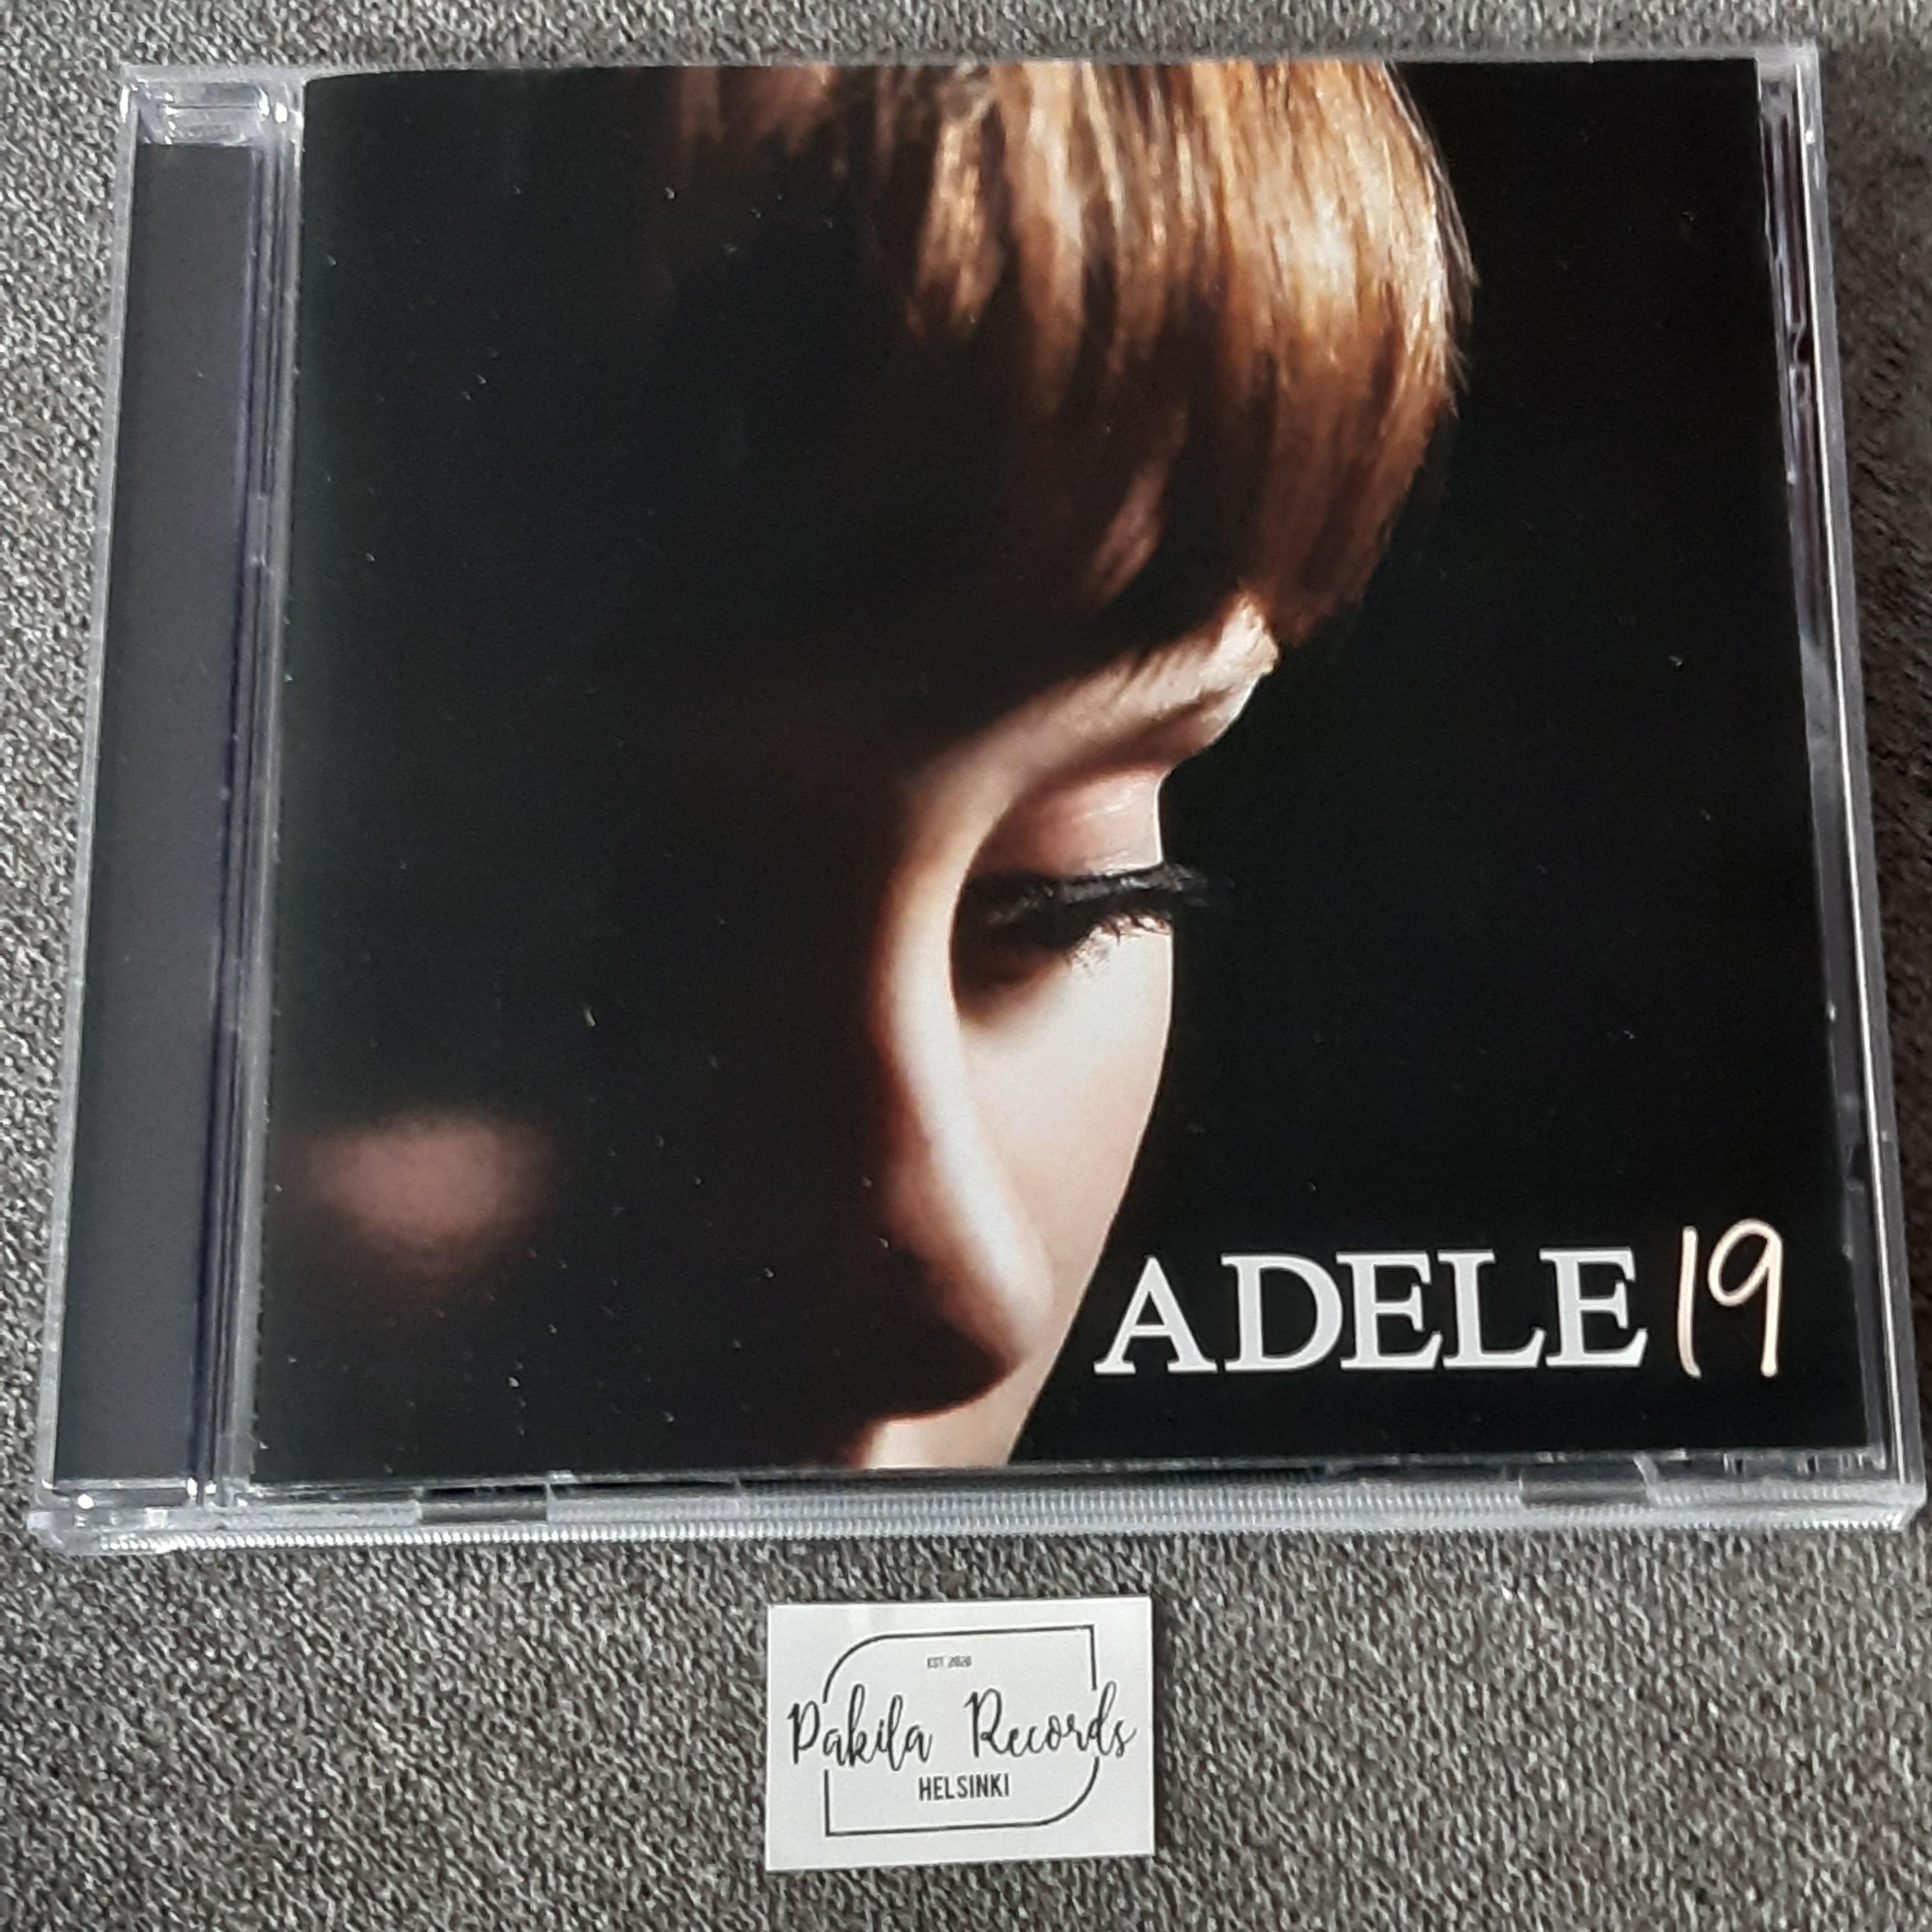 Adele - 19 - CD (käytetty)